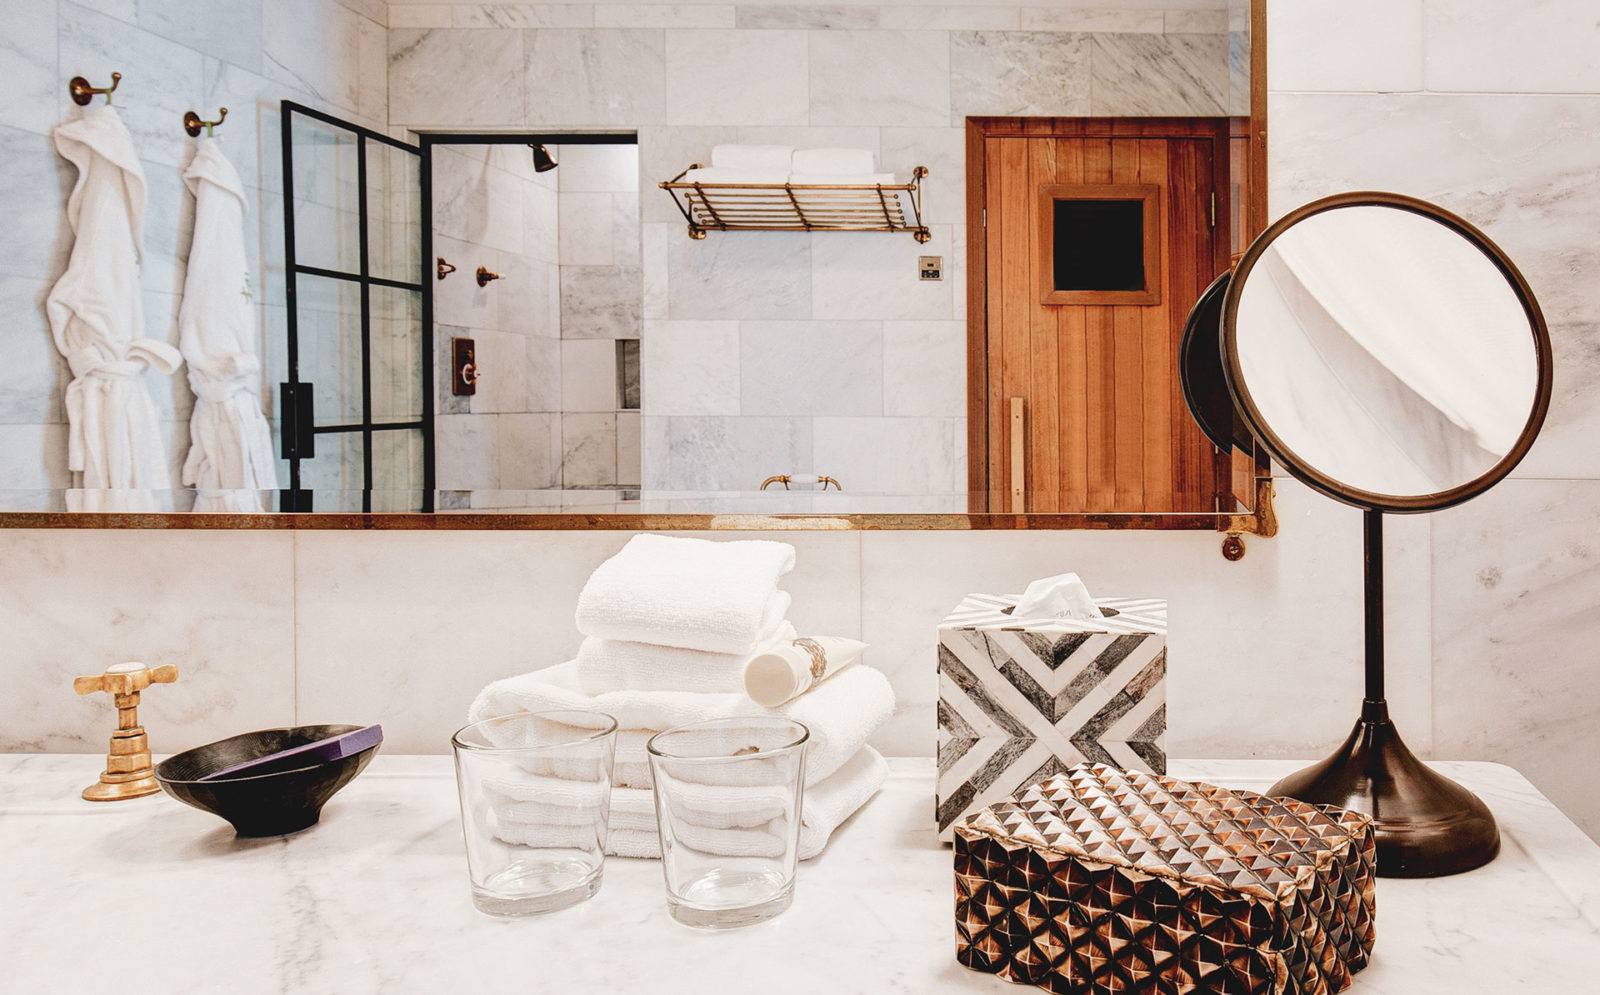 2 Bedroom Studio Suite features a bathroom with sauna